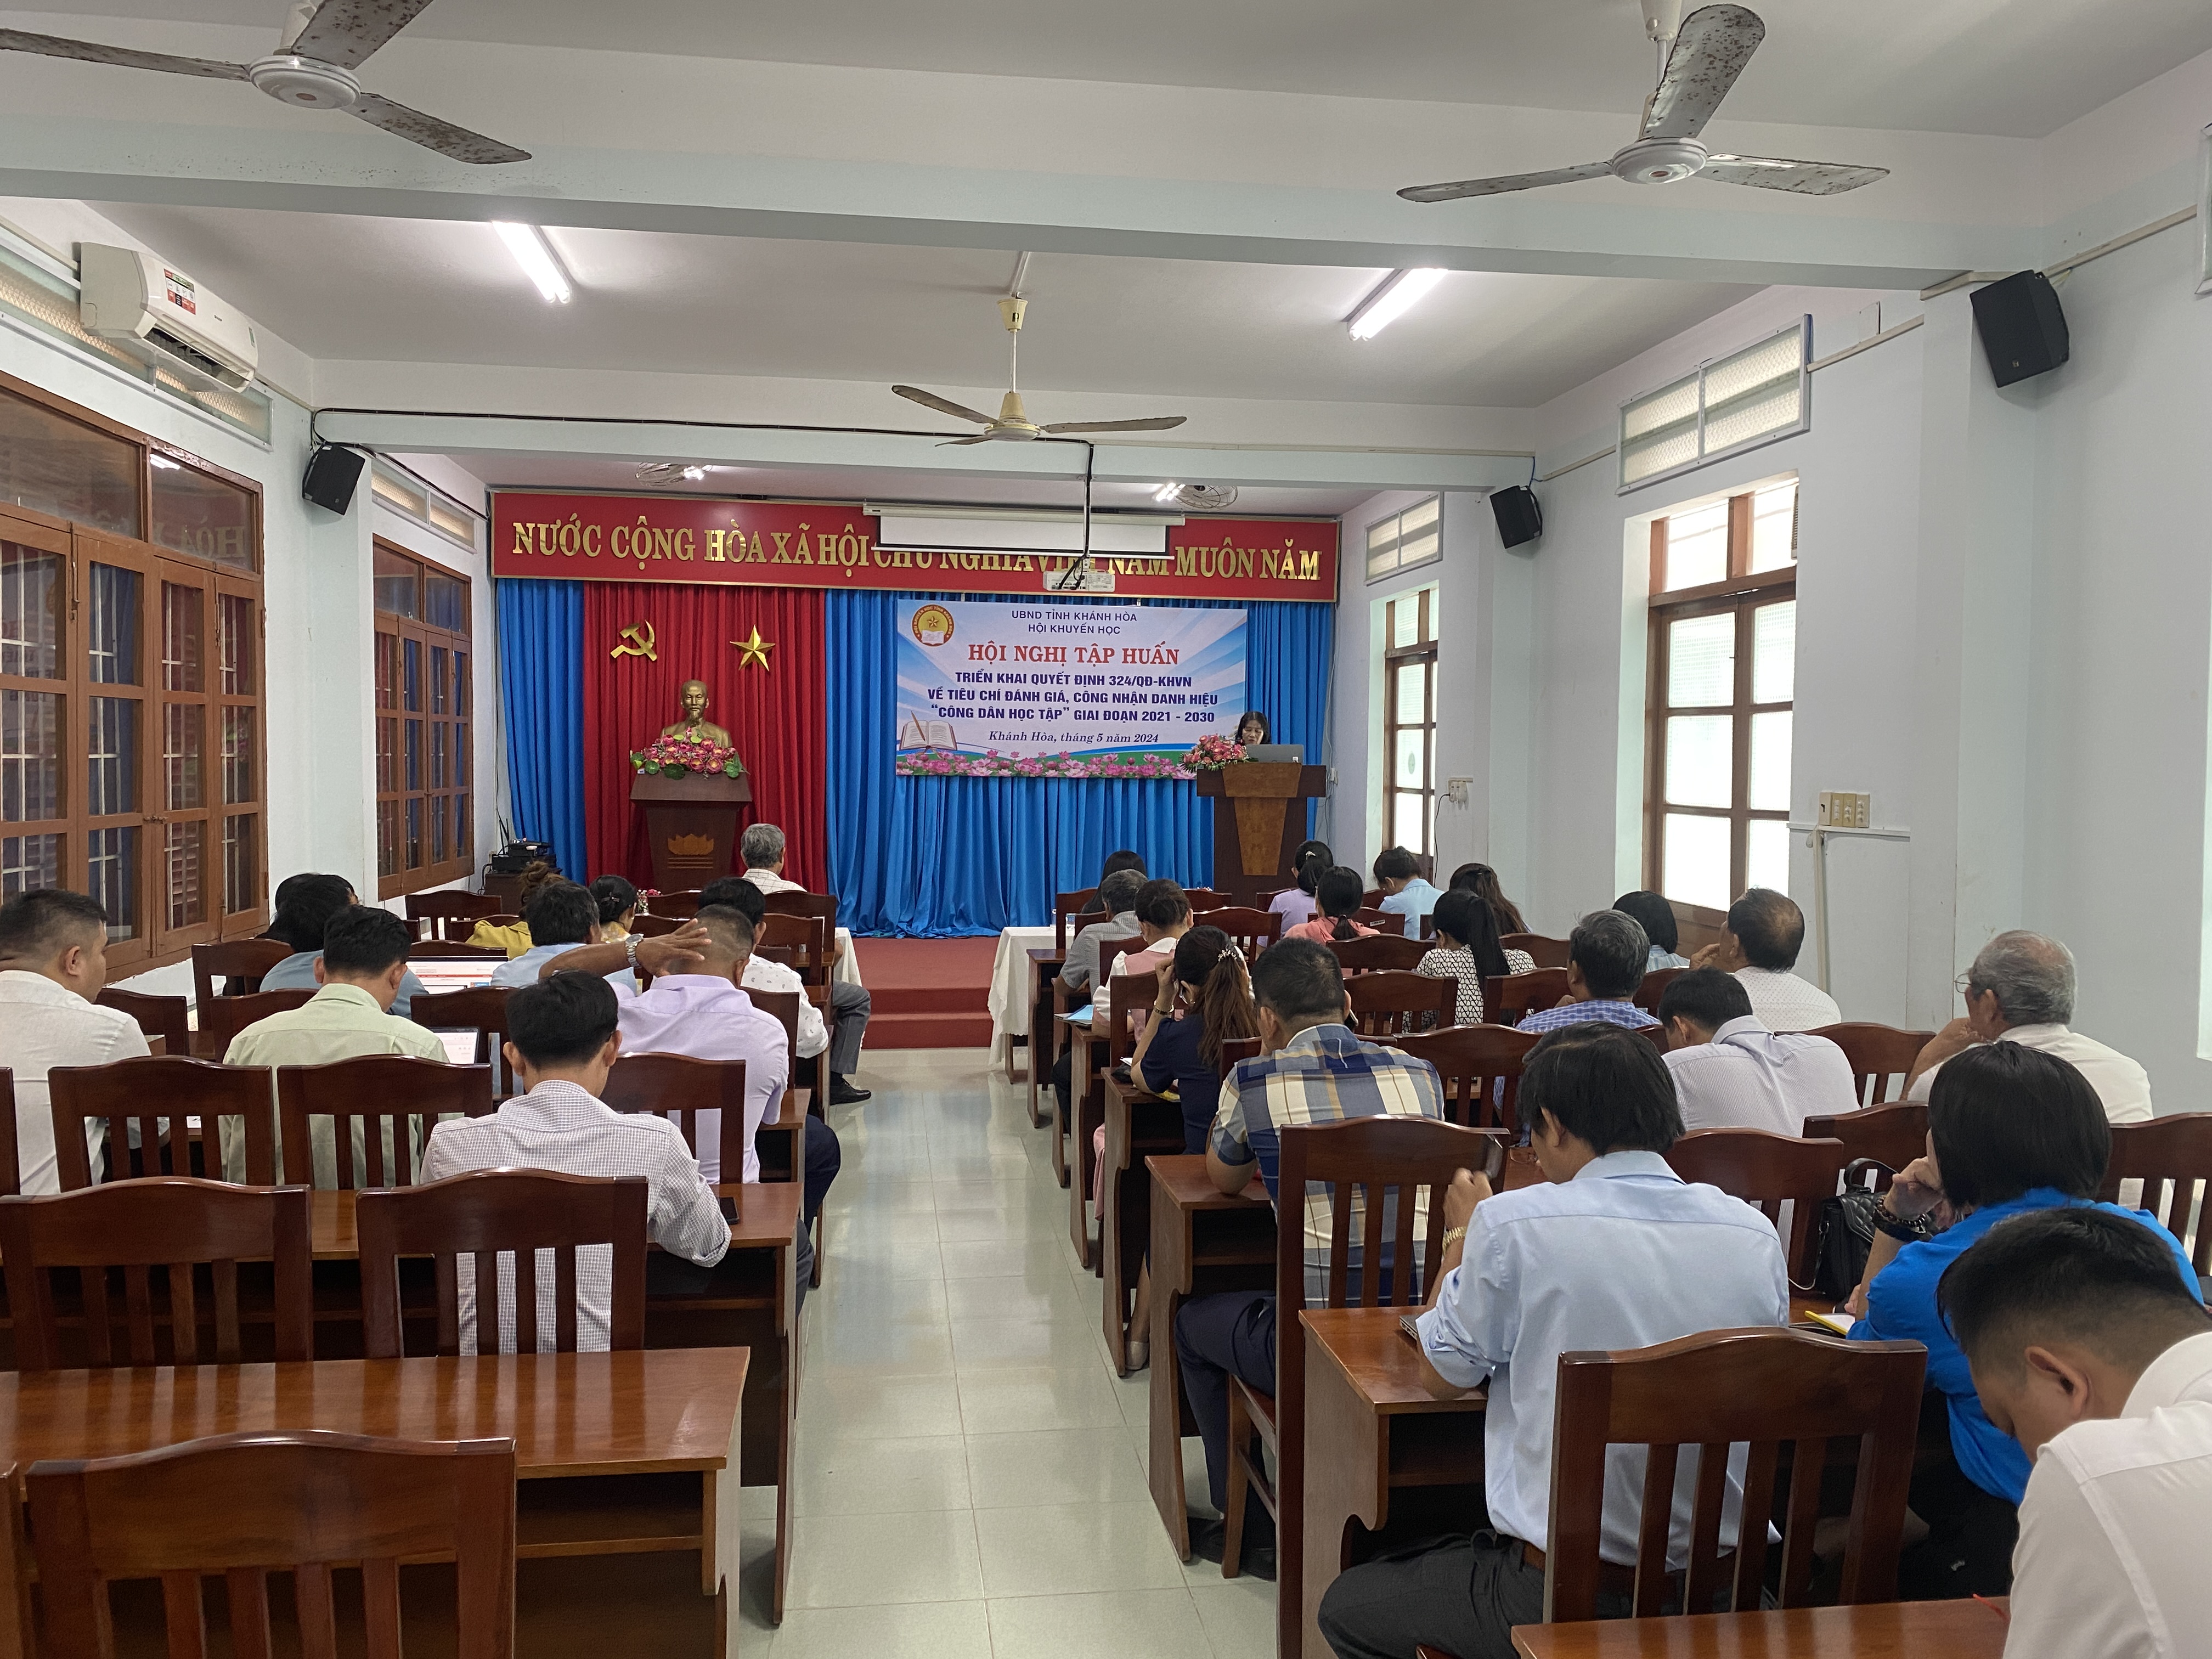 Hội Khuyến học tỉnh Khánh Hòa tổ chức Hội nghị tập huấn triển khai Quyết định 324/QĐ-KHVN về tiêu chí đánh giá, công nhận danh hiệu Công dân học tập giai đoạn 2021 - 2030